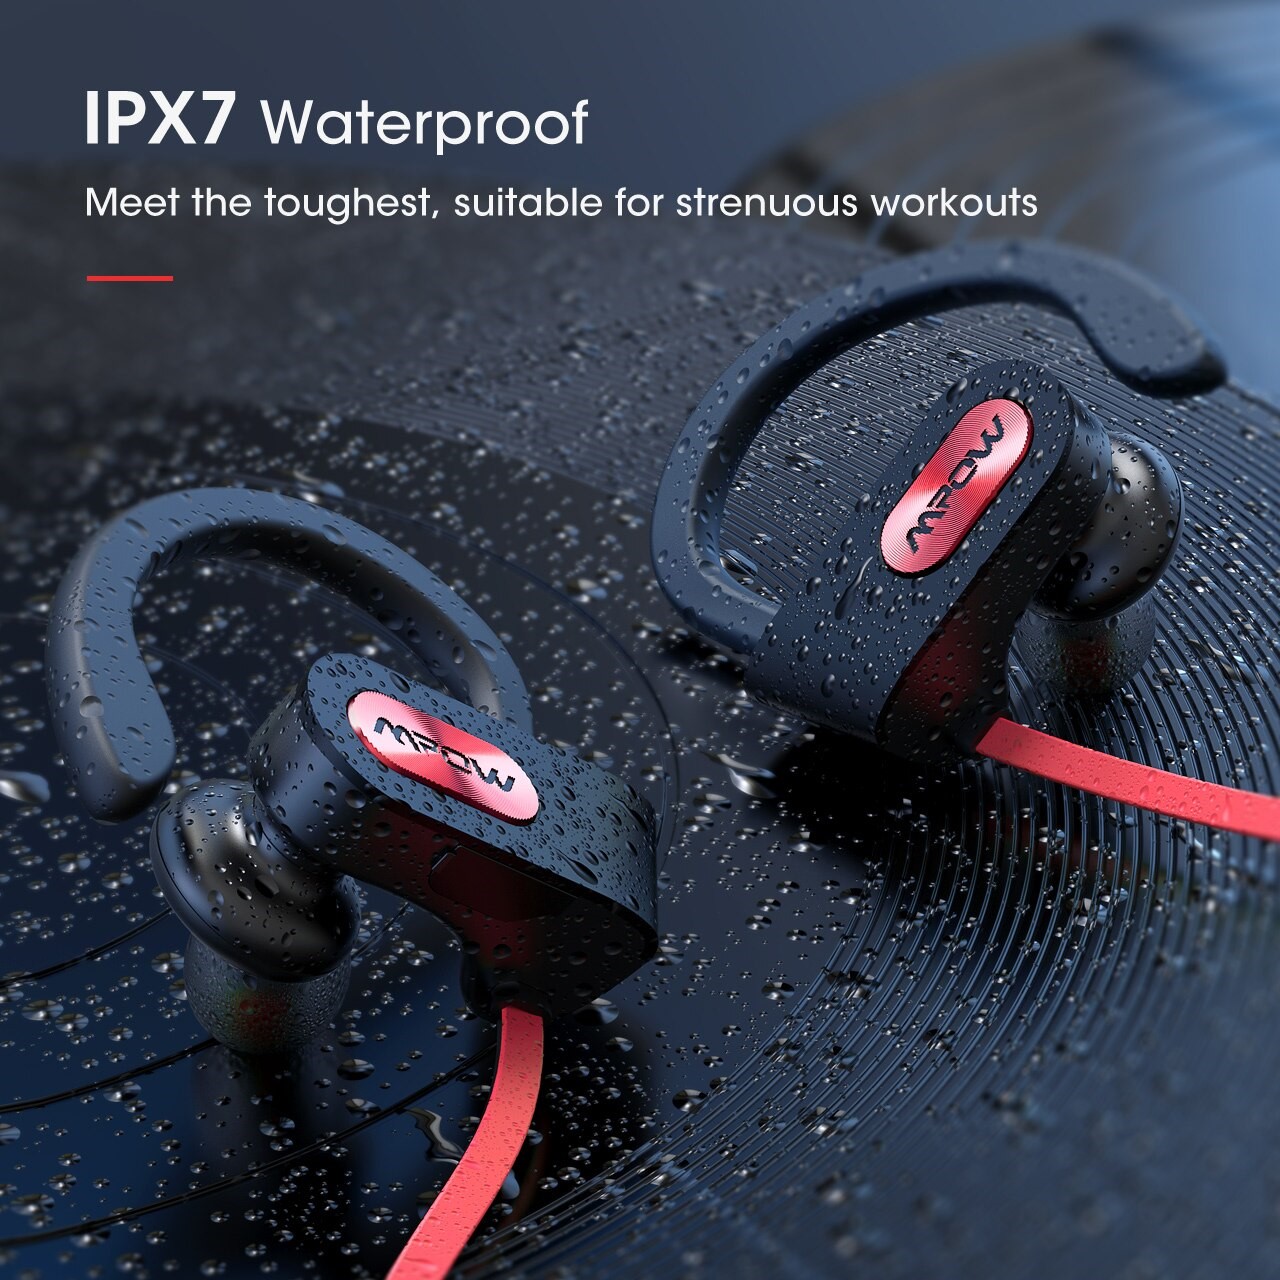 Mpow BH088A ワイヤレスヘッドフォン bluetooth 5.0 IPX7 防水 イヤホン 低音 7時間再生 スポーツ ランニング アウトドア スマートフォン 通話